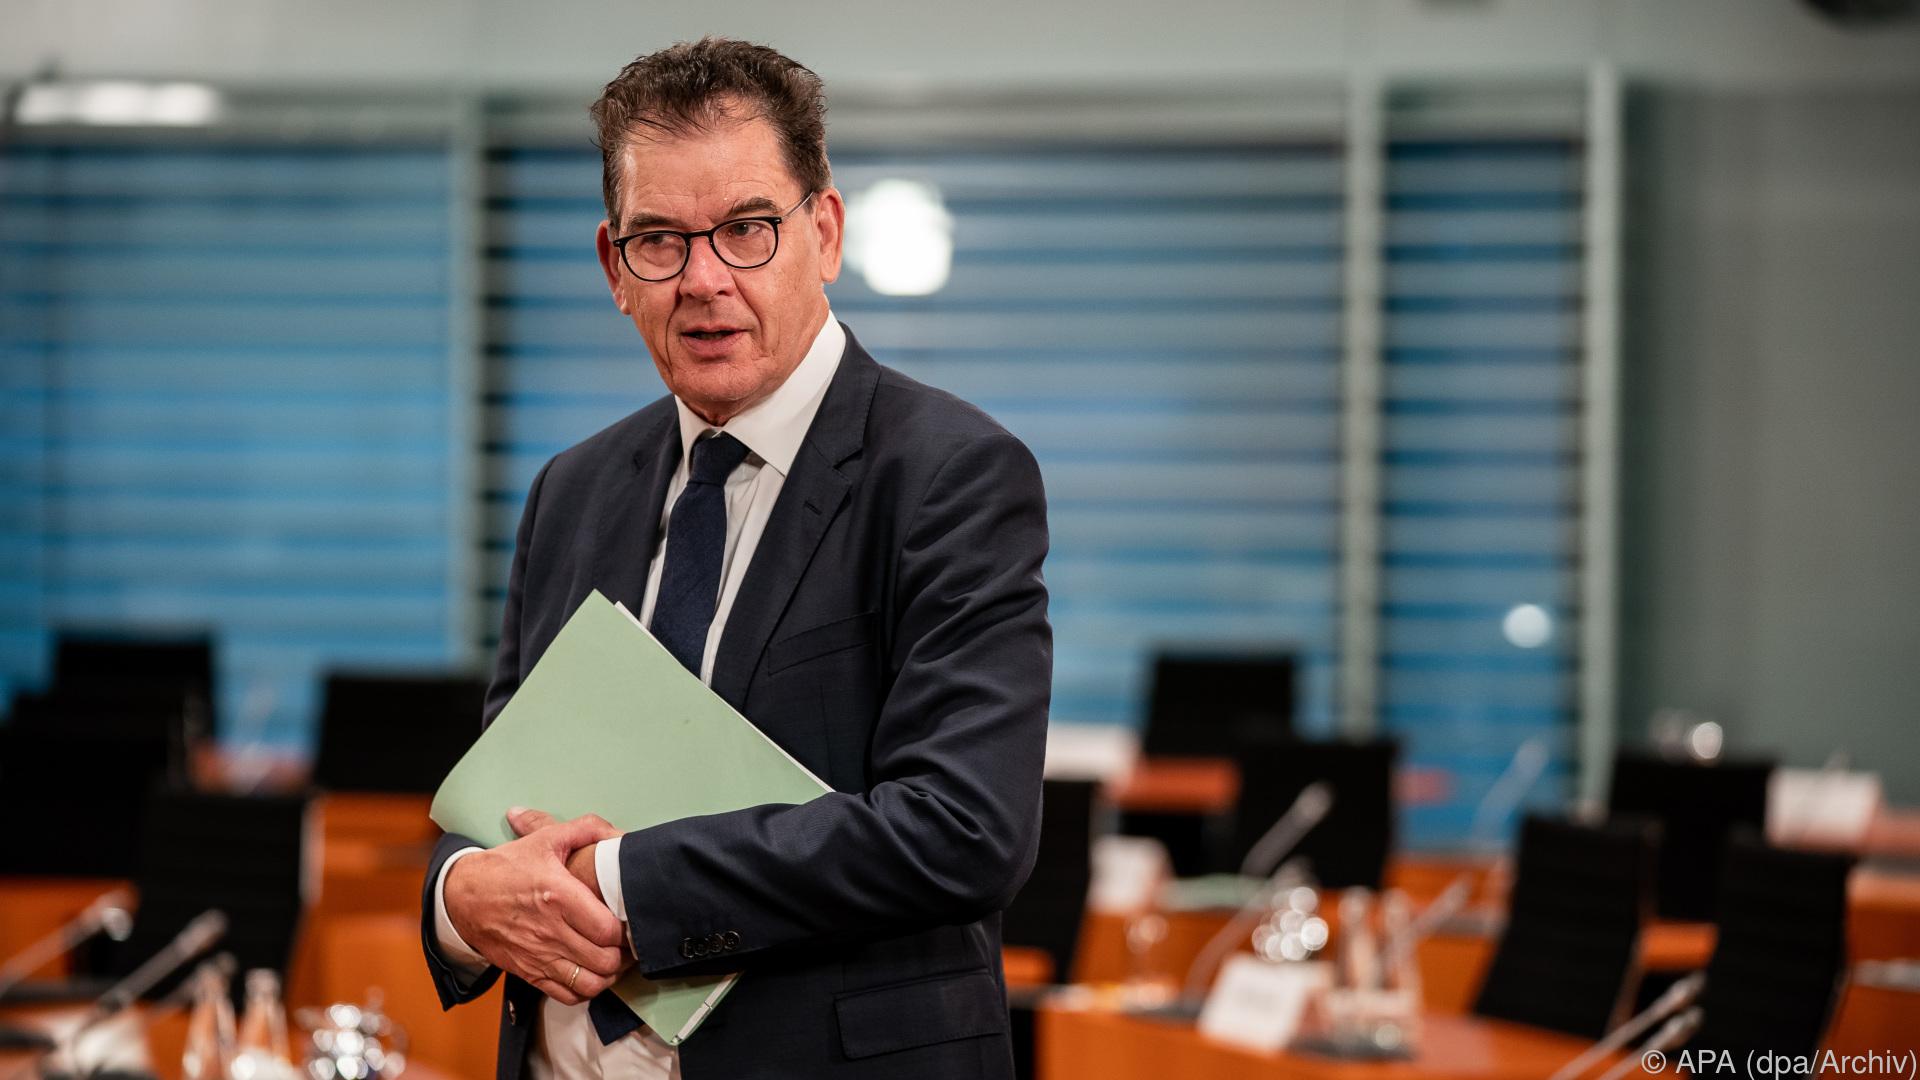 Bericht: Minister Müller will sich aus Bundestag zurückziehen